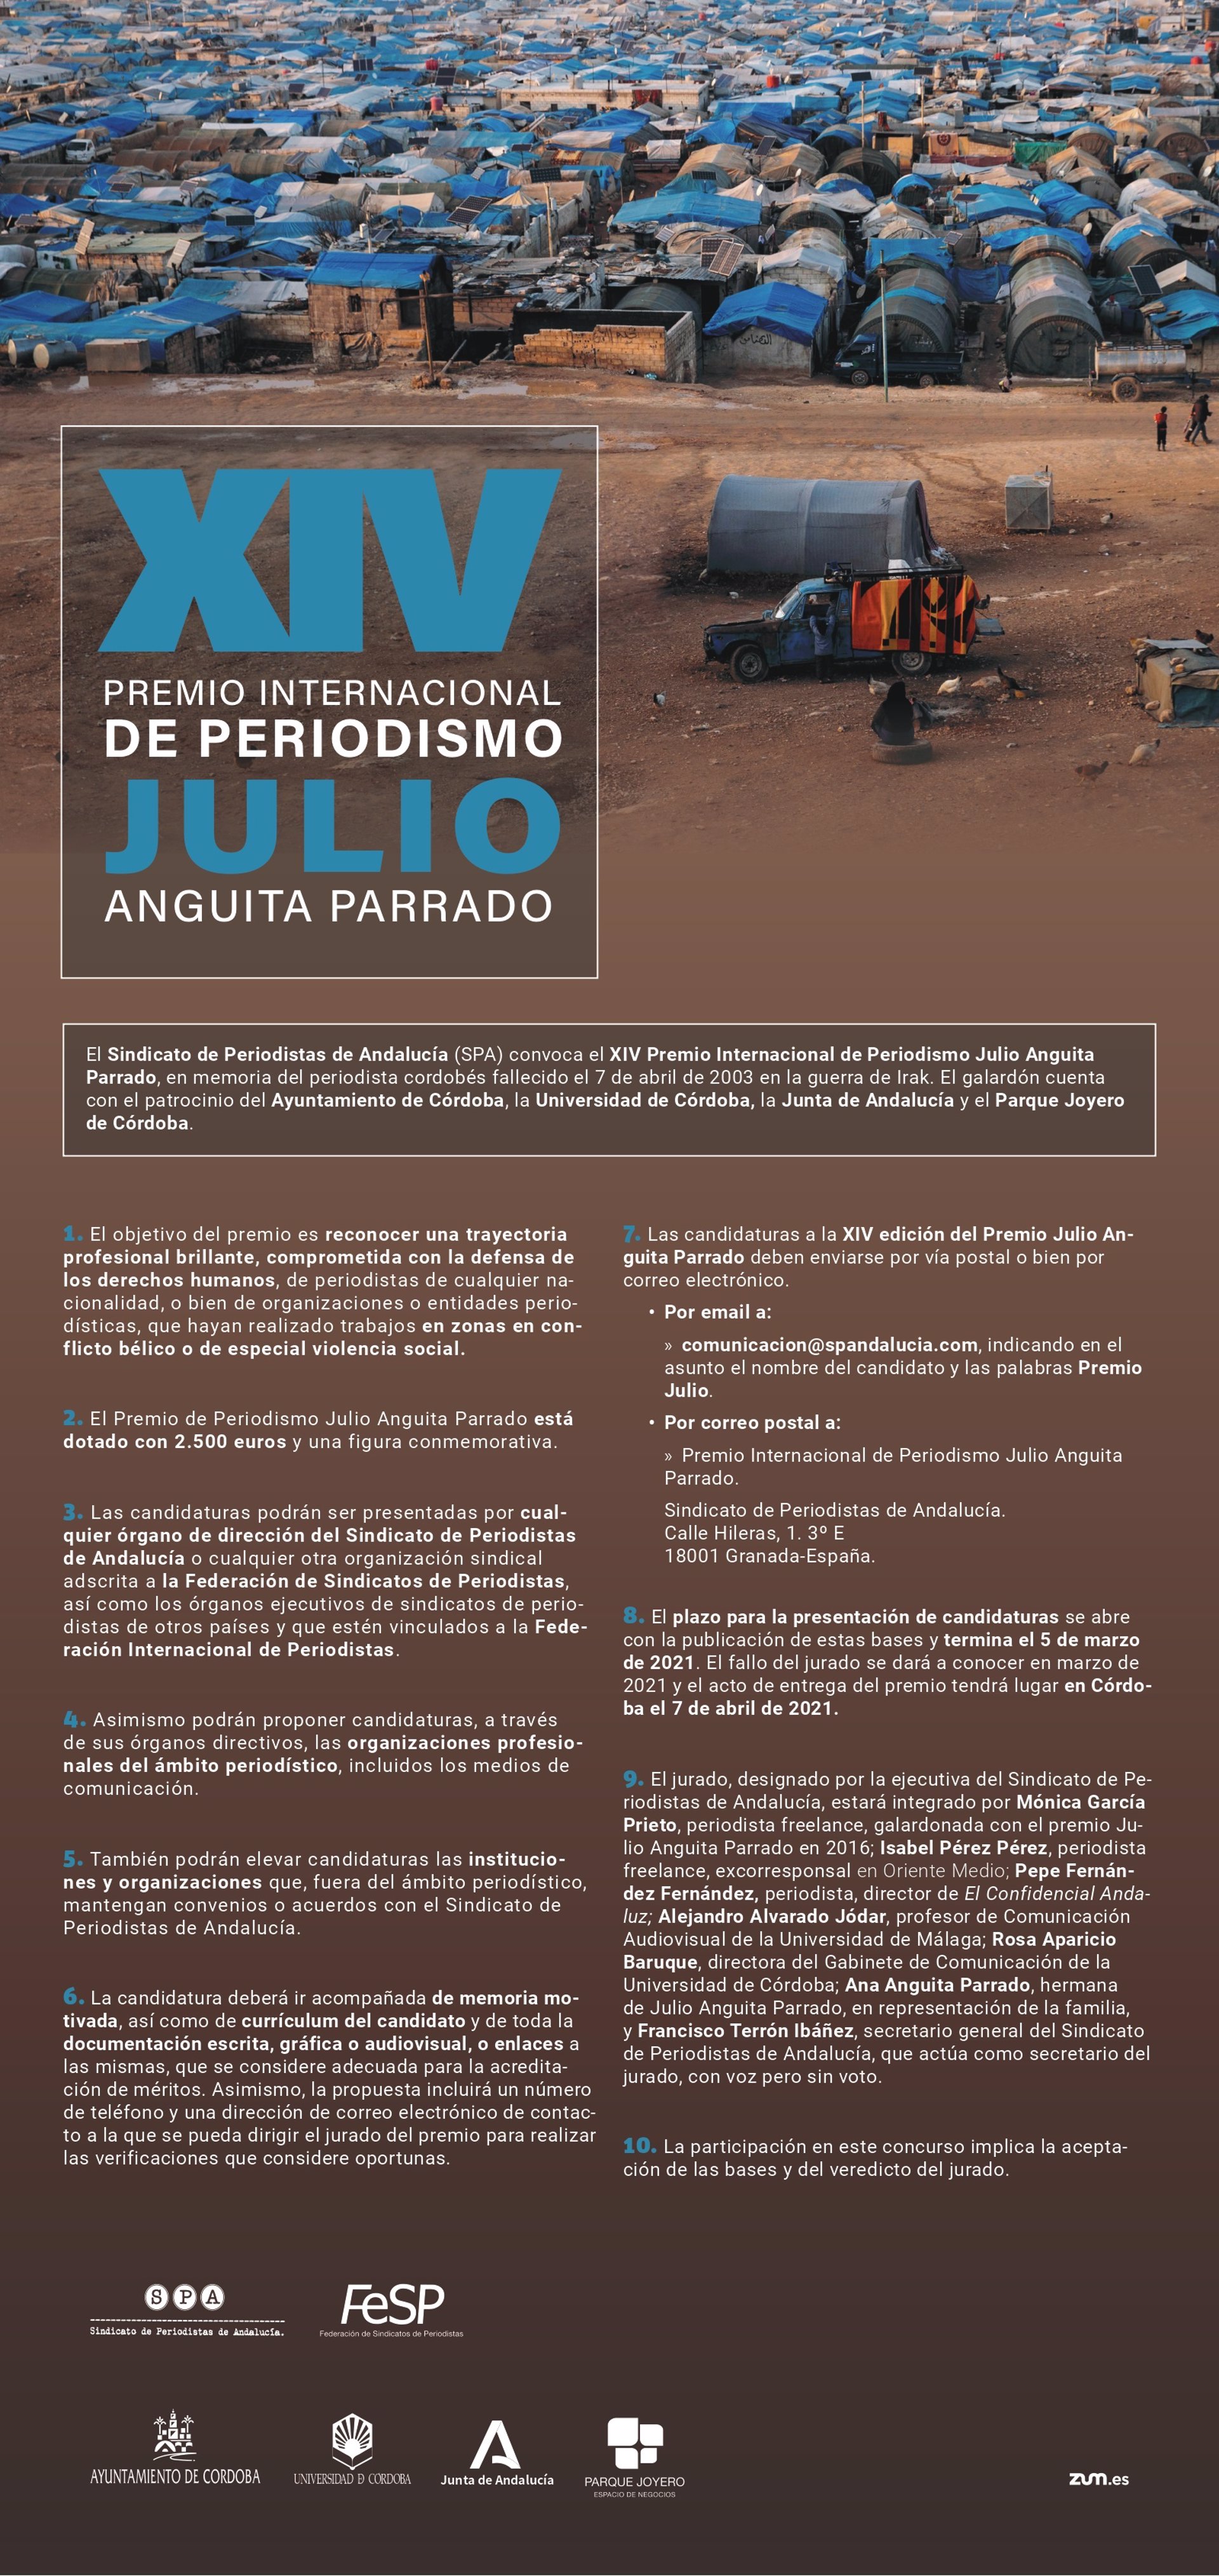 El Sindicato de Periodistas de Andalucía convoca el XIV Premio Internacional de Periodismo Julio Anguita Parrado